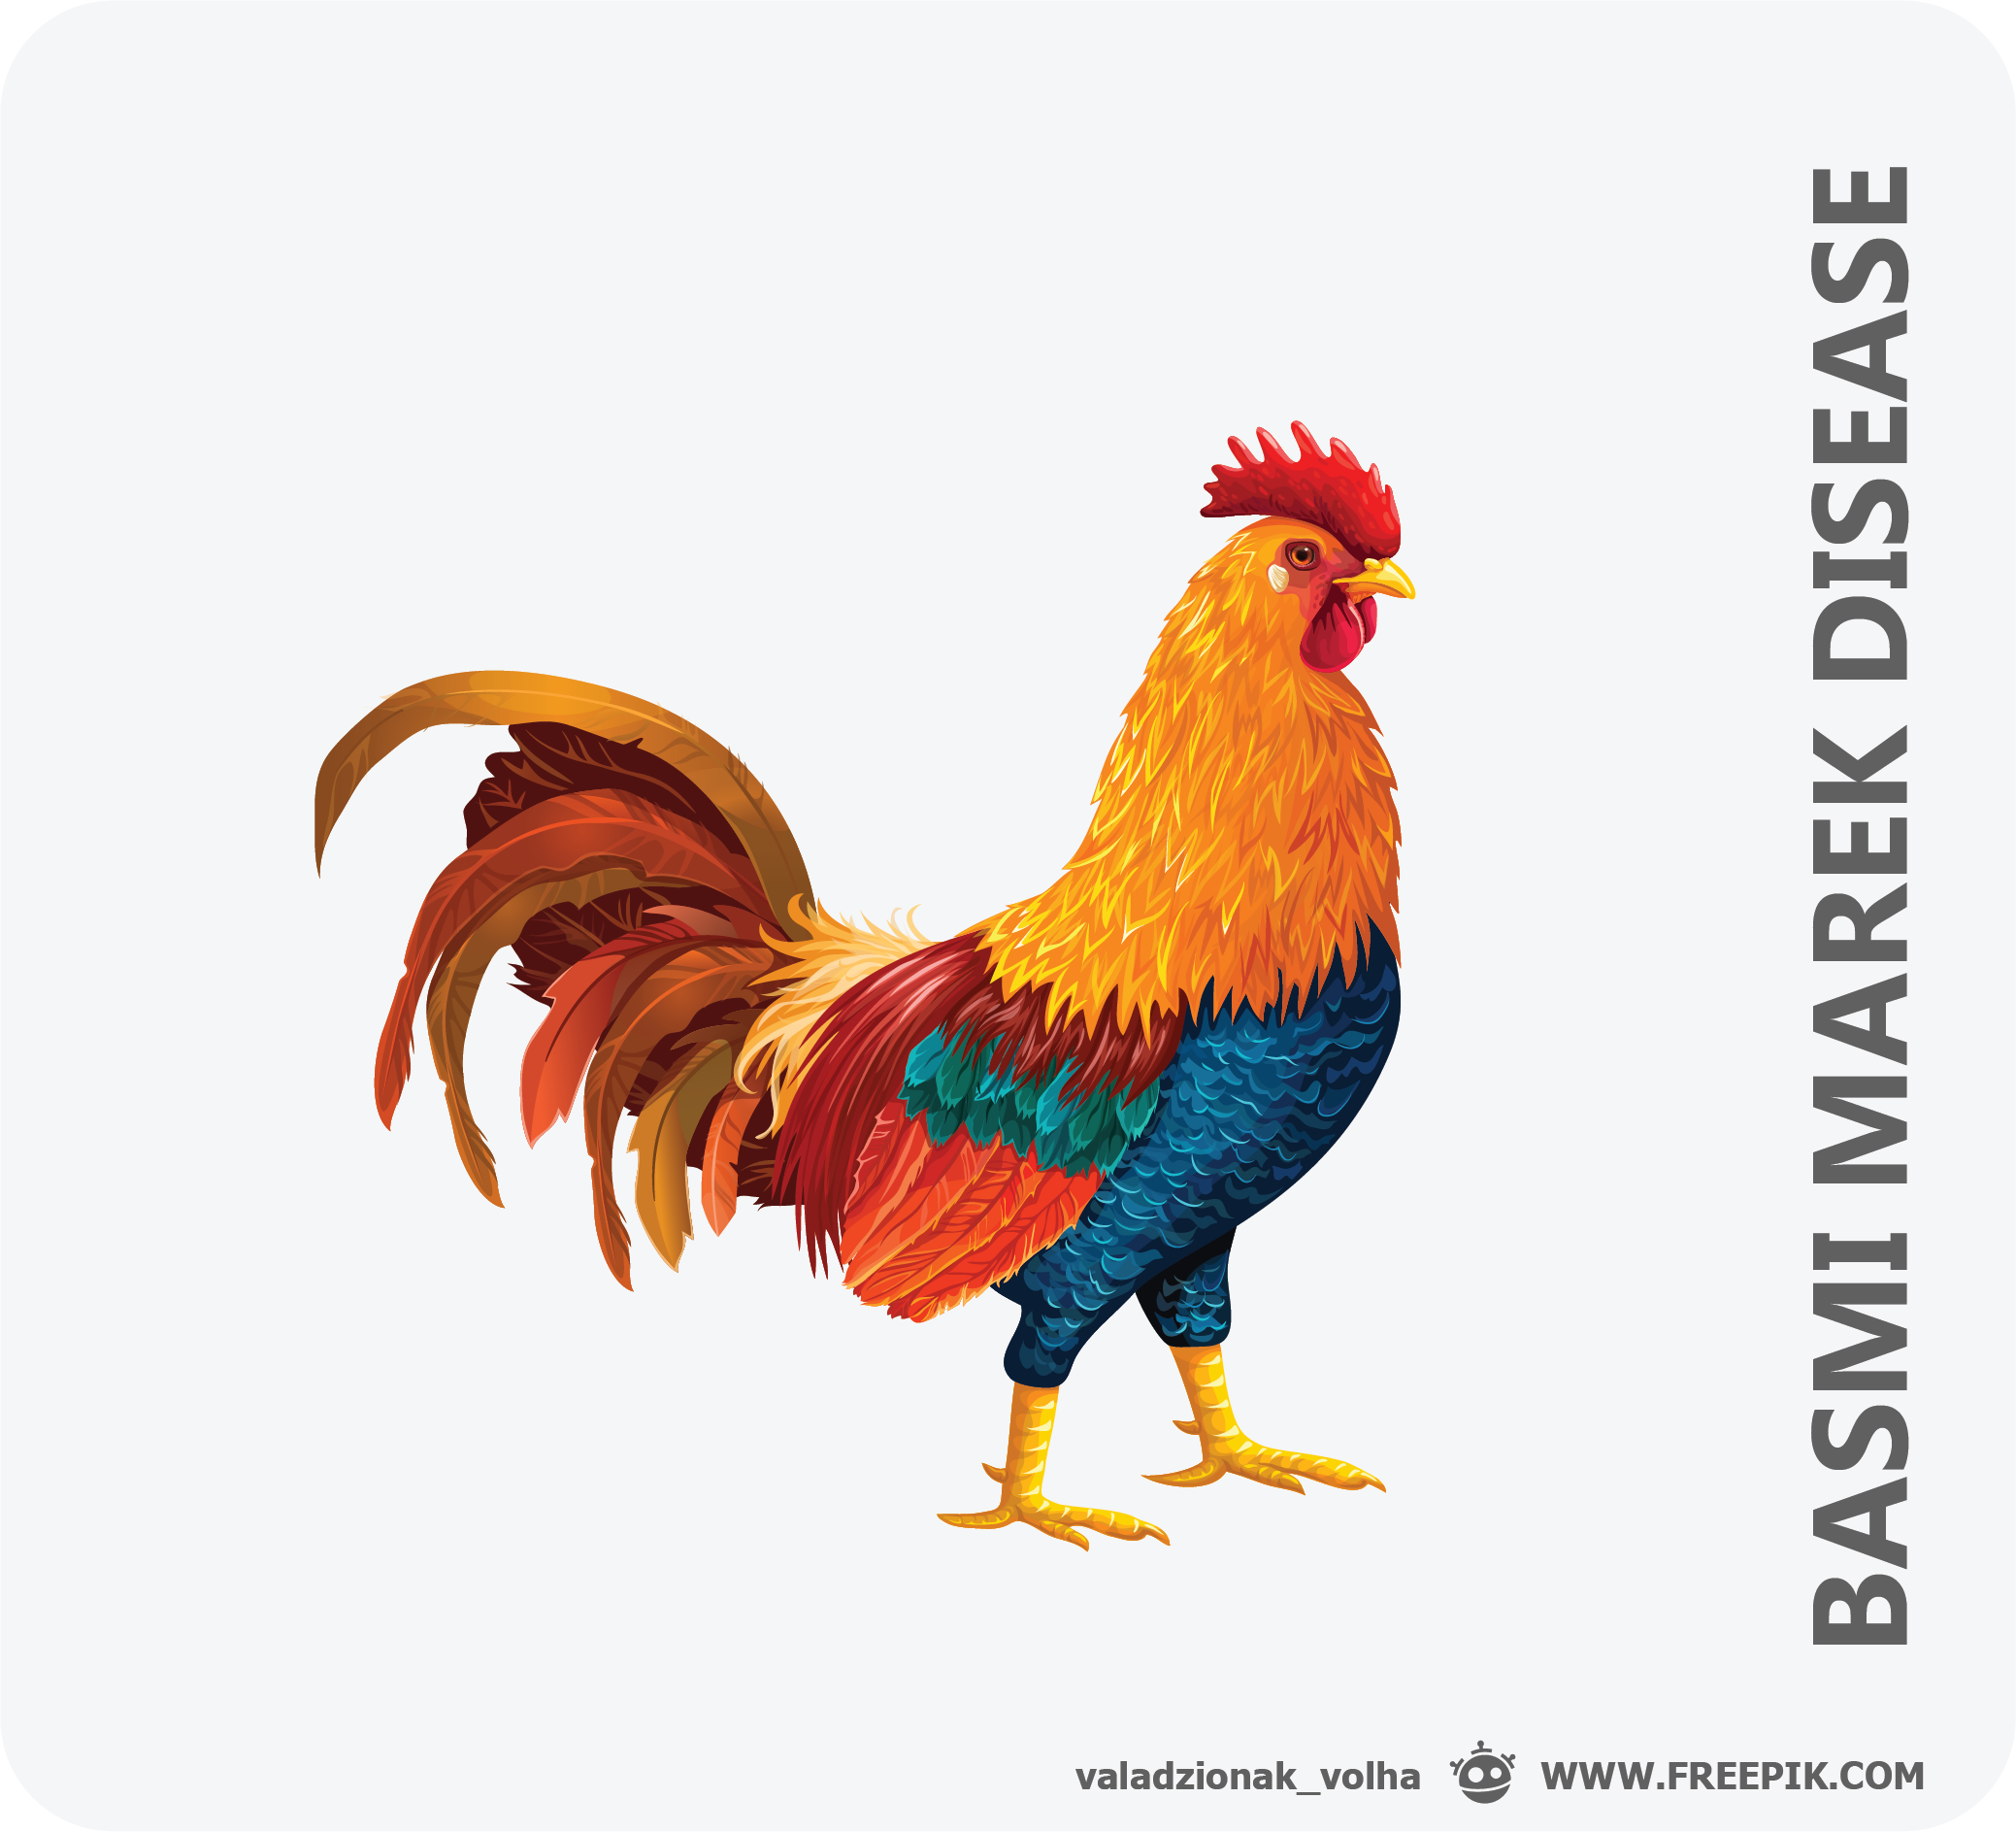 Penyakit Marek Disease pada Ayam